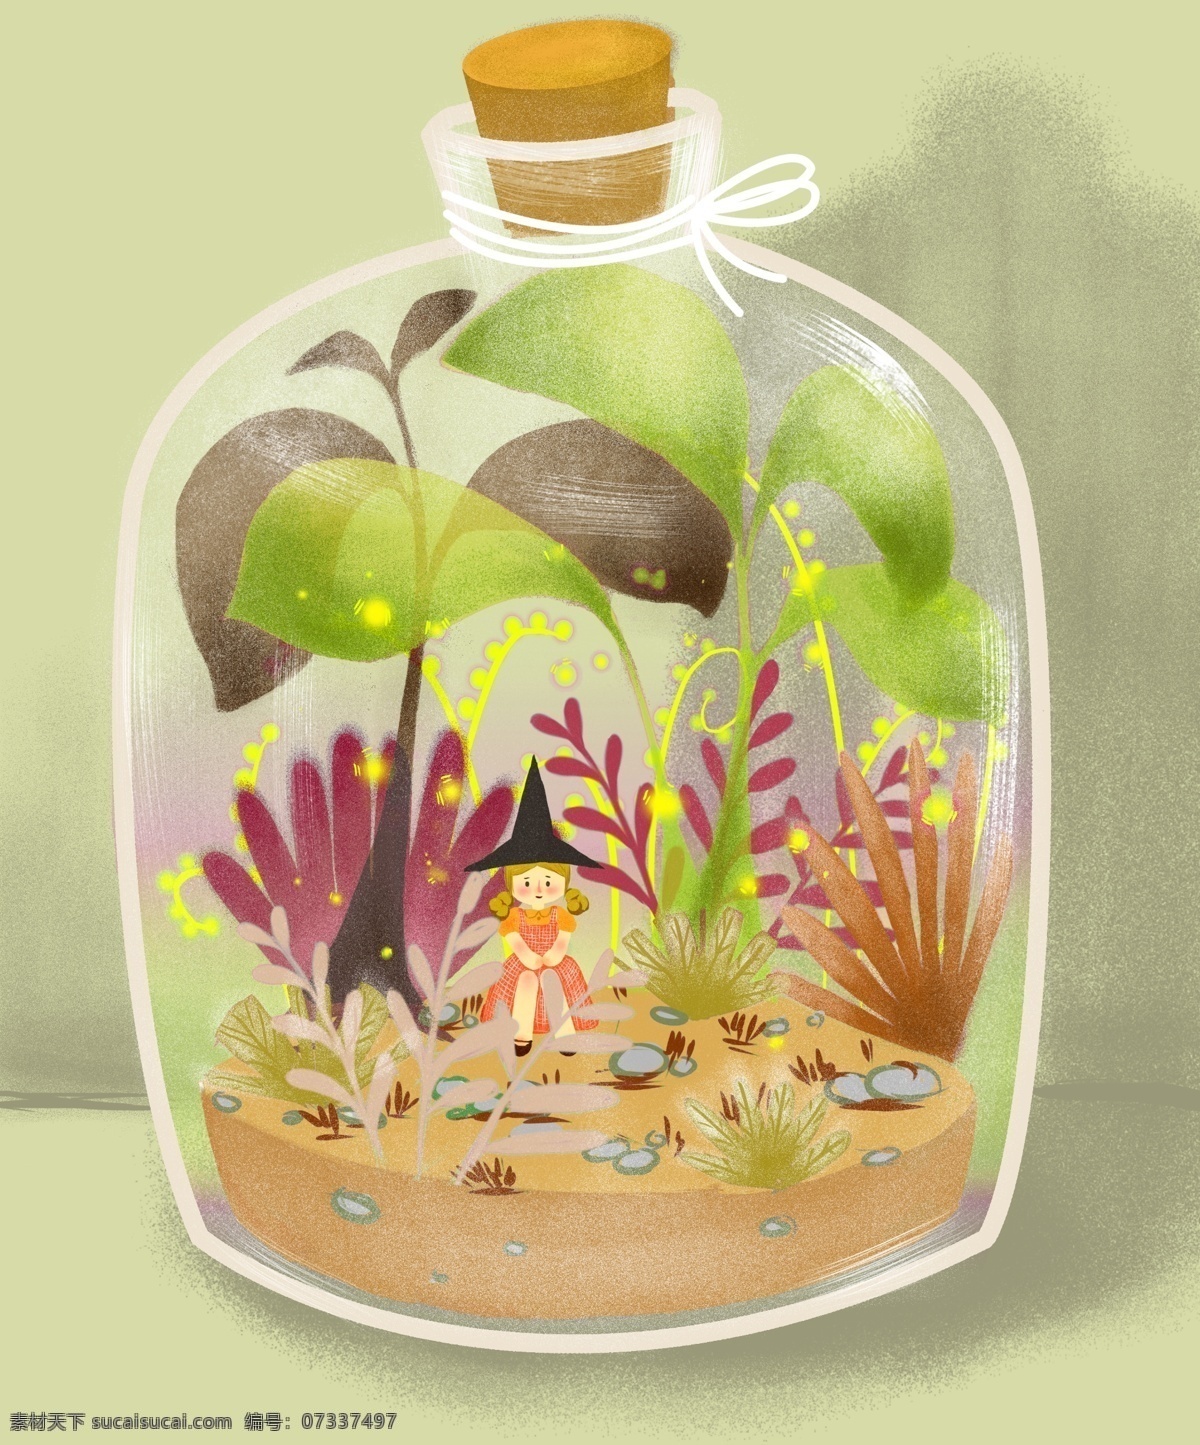 原创 手绘 扁平 风格 瓶子 女巫 插画 女孩 植物 生态瓶 魔法 幻想 奇妙 魔法瓶 自然 摆件 生活方式